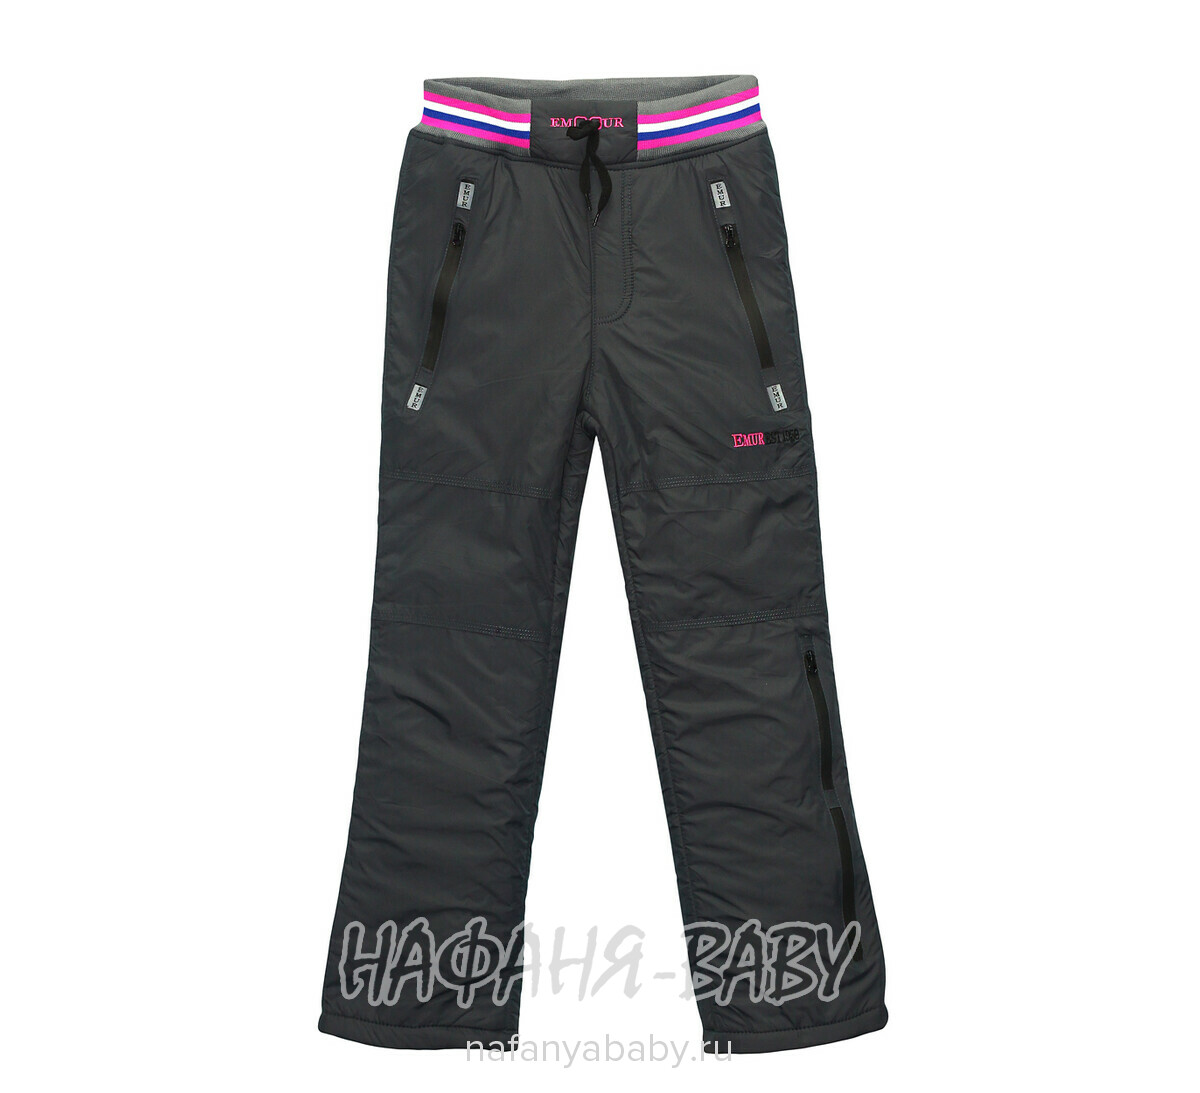 Подростковые теплые брюки EMUR, купить в интернет магазине Нафаня. арт: 029.